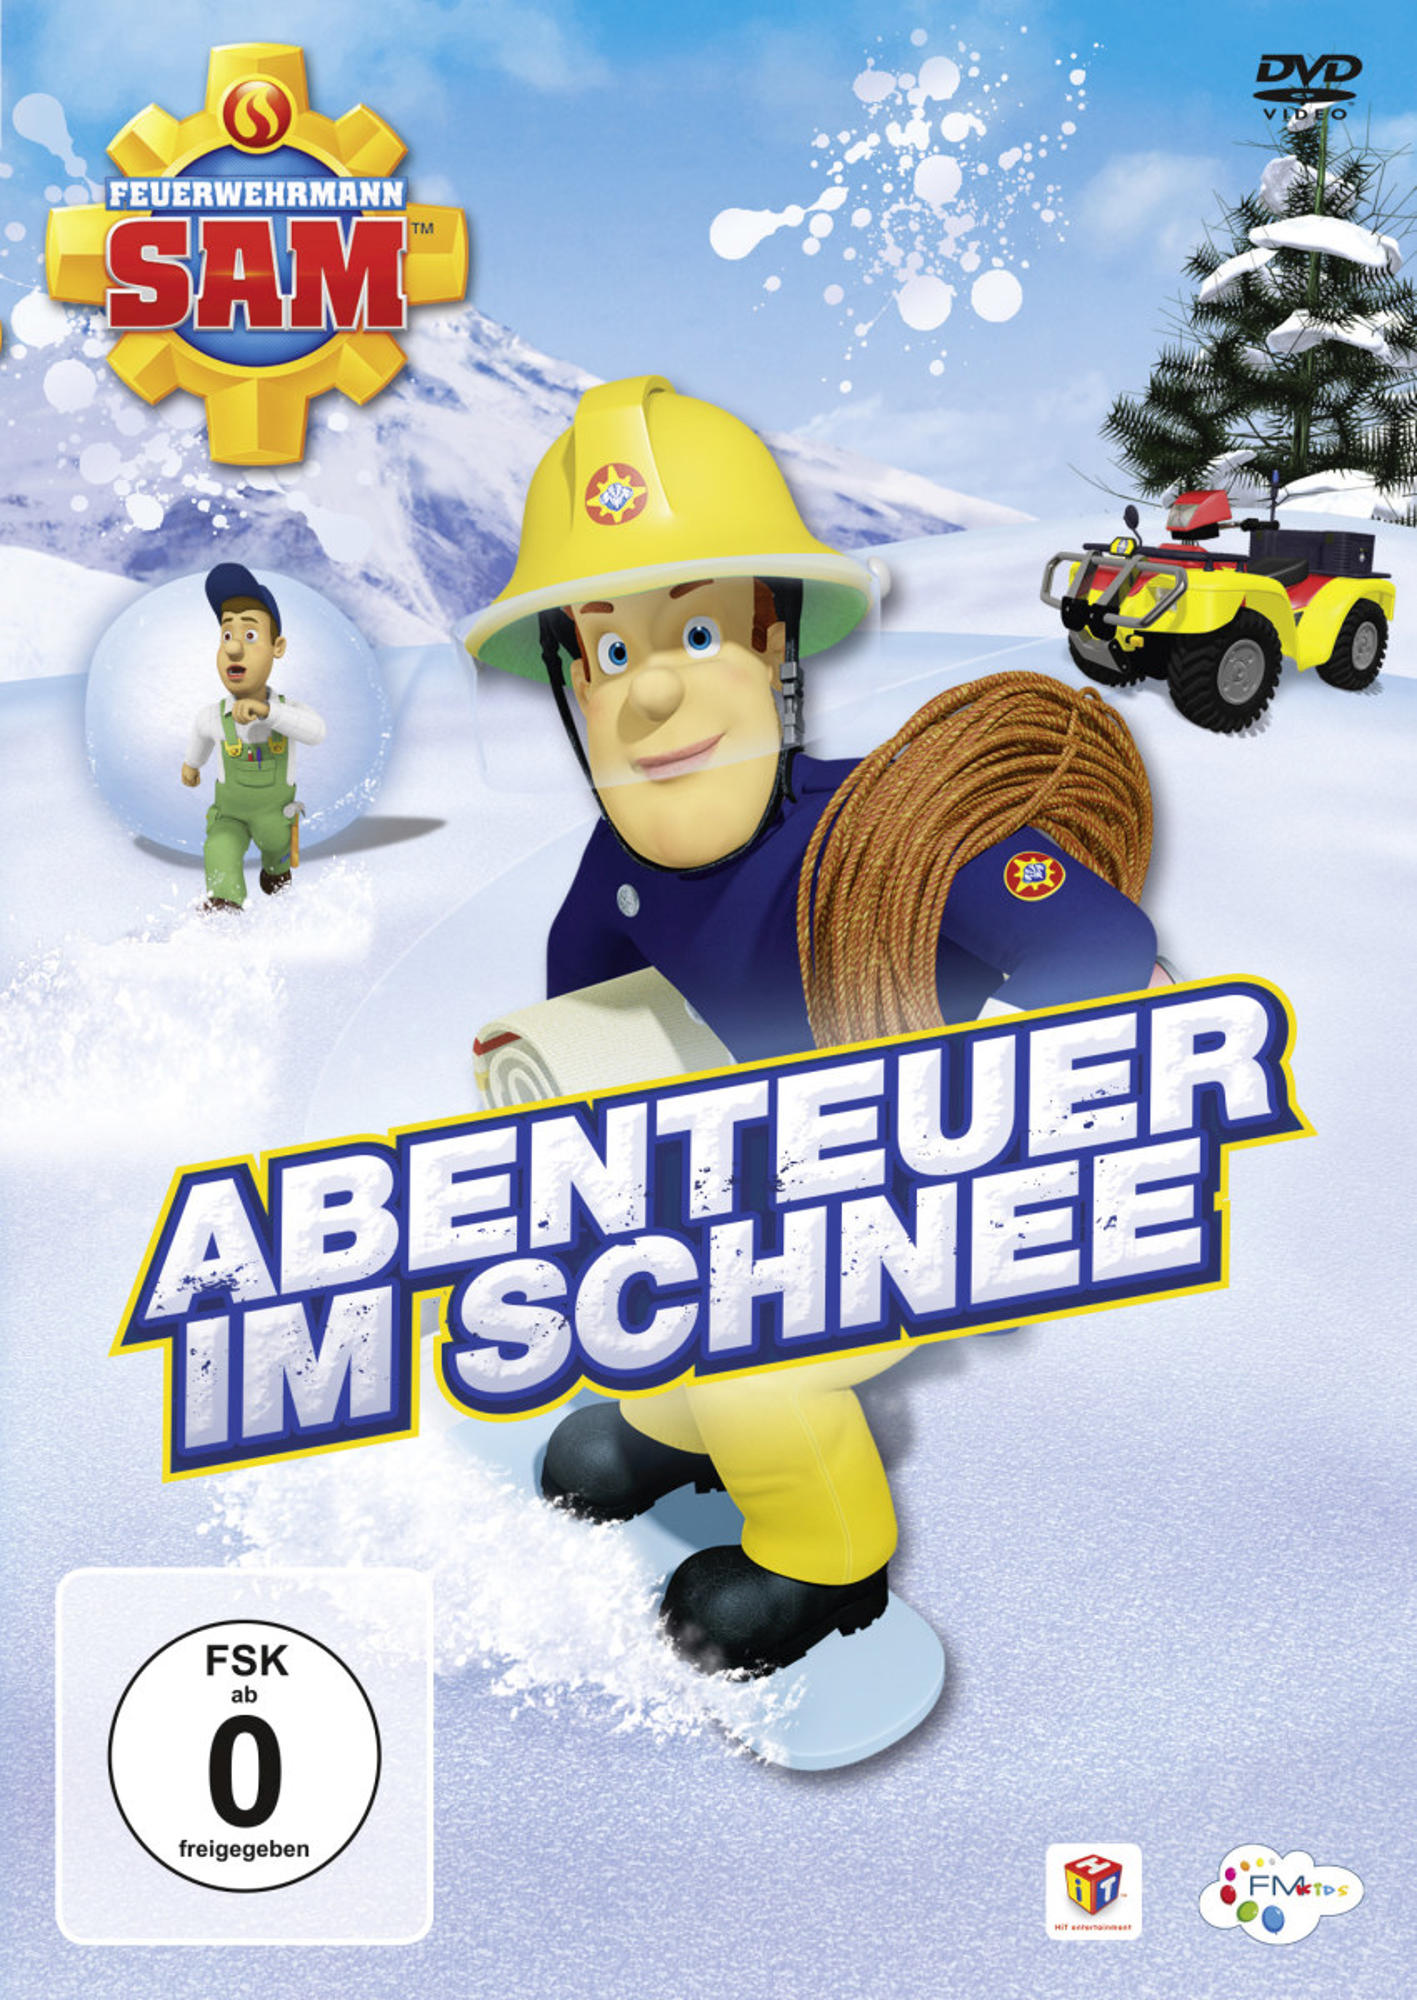 8.4 im Staffel Abenteuer DVD Schnee - - Sam Feuerwehrmann